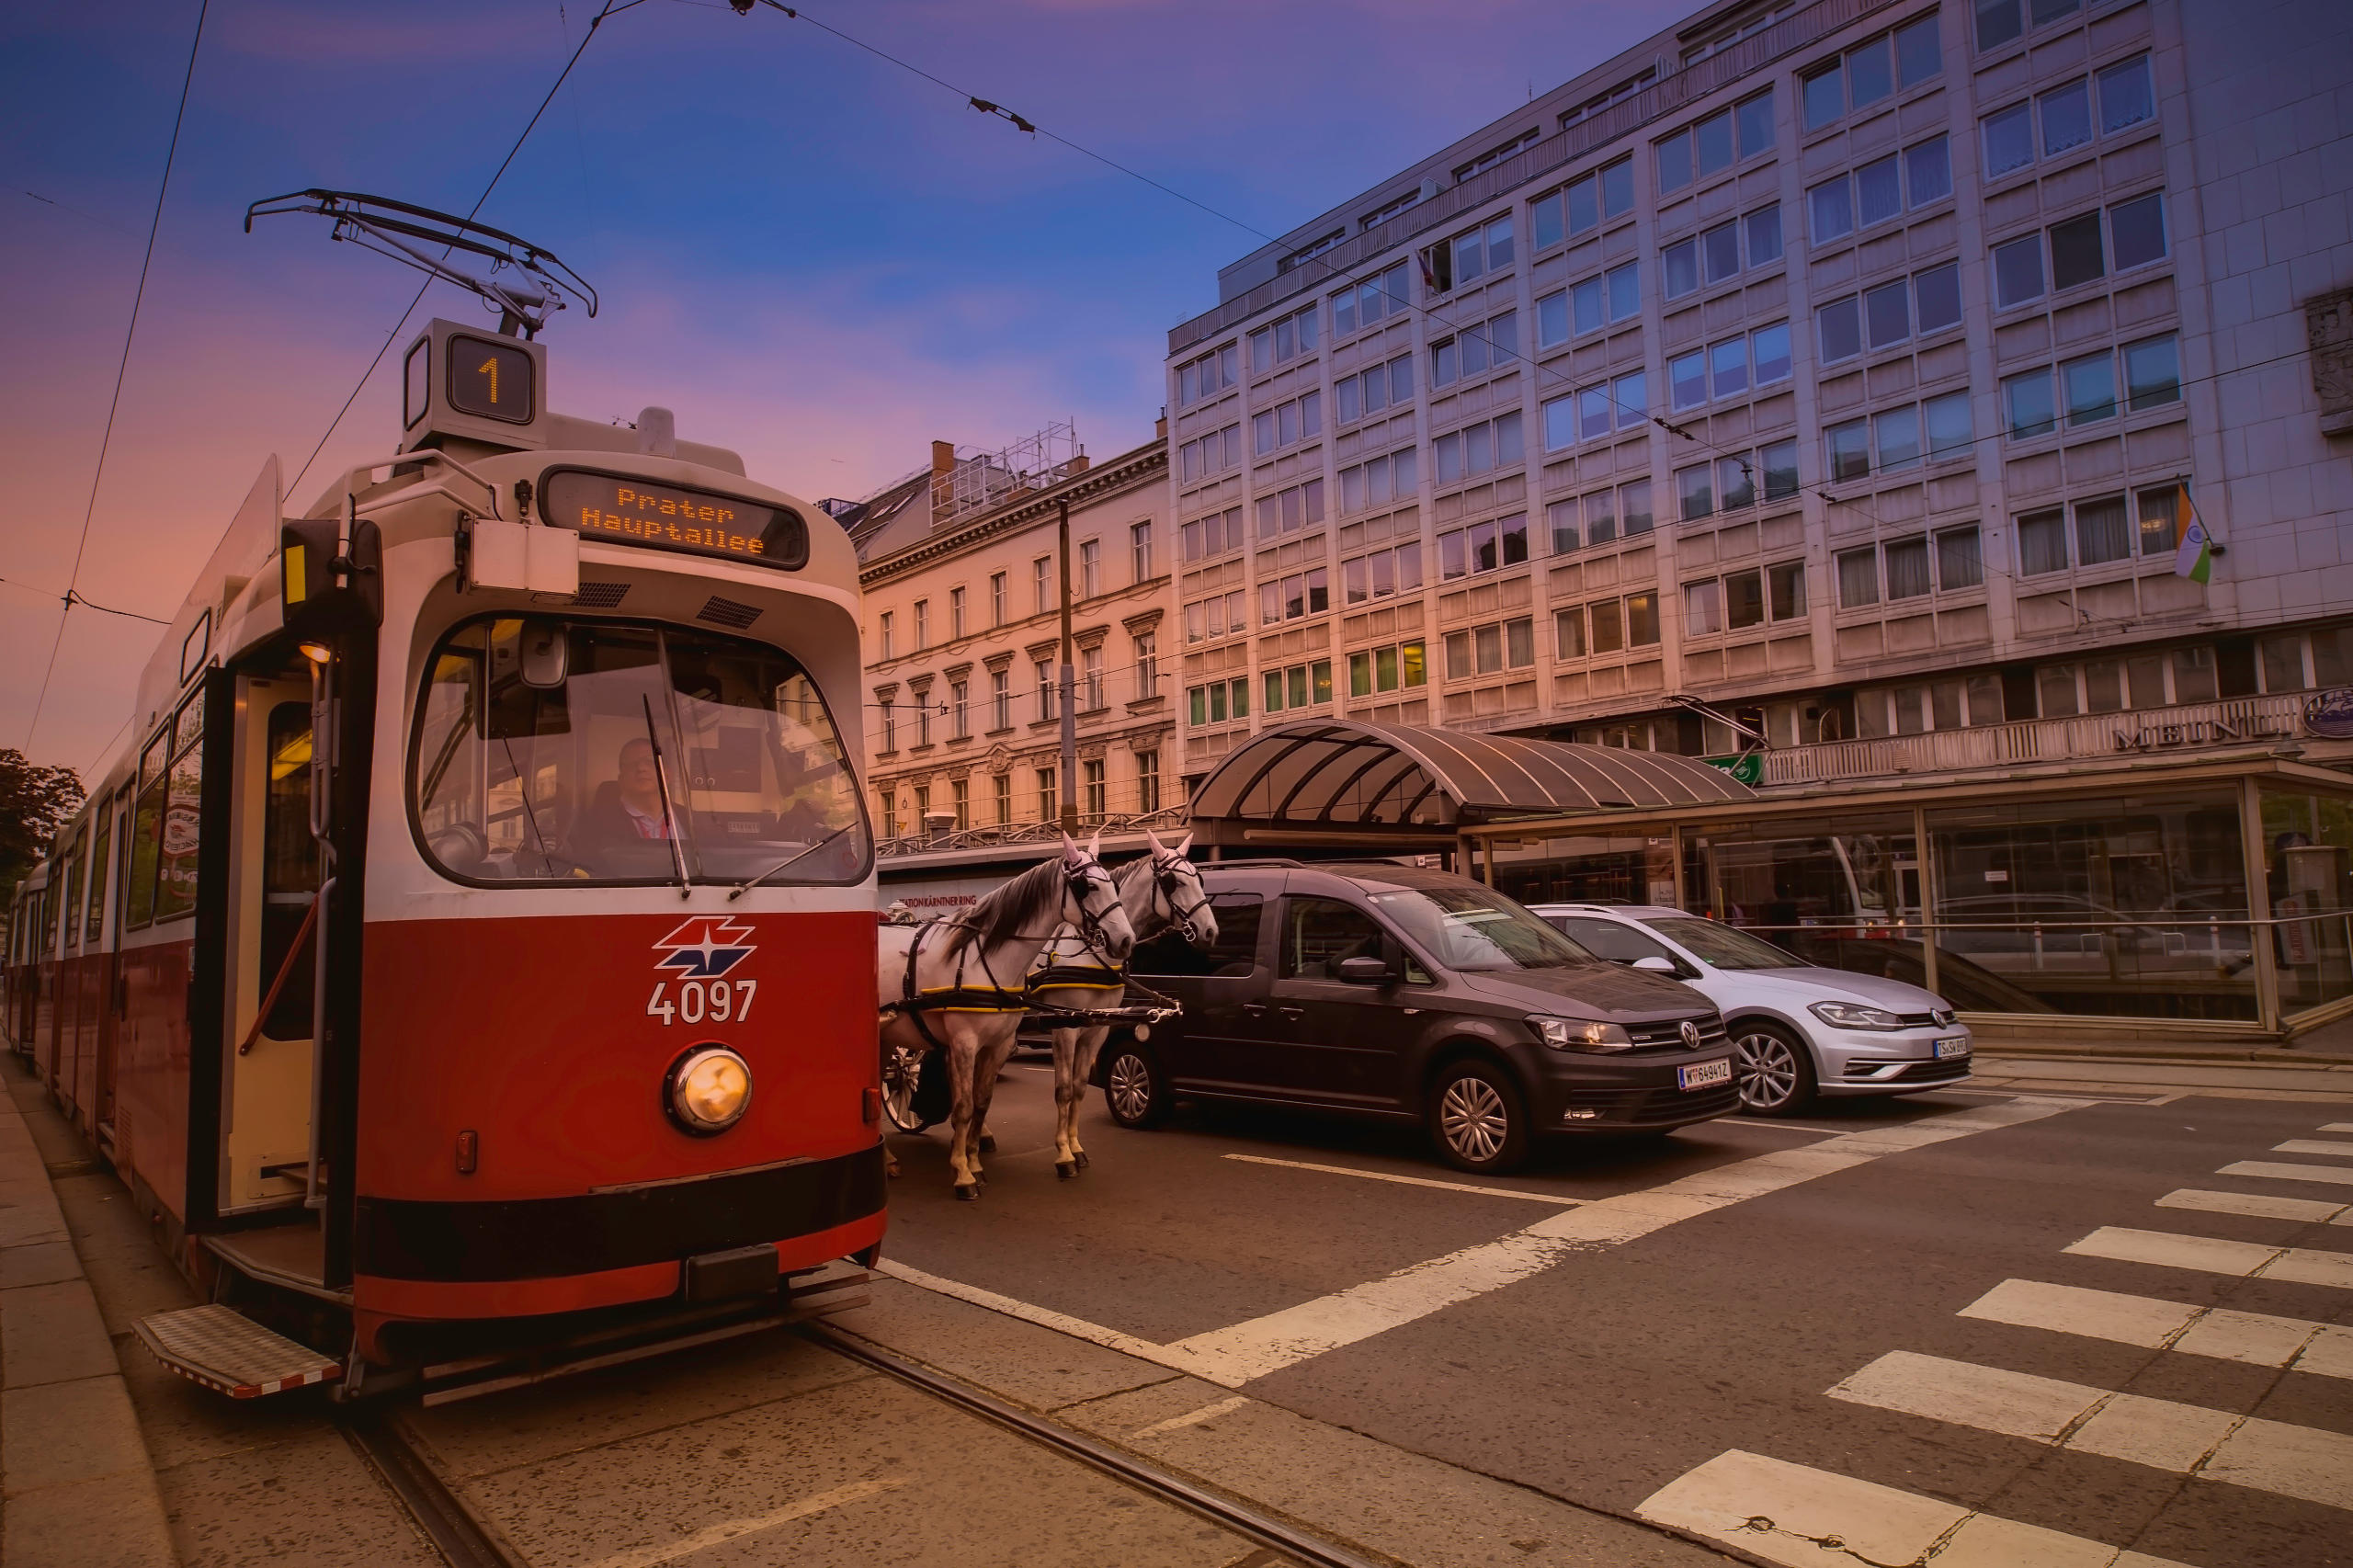 Eine Straßenbahn, oder Bim, steht in Wien an der Ampel. Daneben zwei Autos und ein Fiaker oder Pferdekutsche. Symbolbild für Inflation 2022 in Österreich.